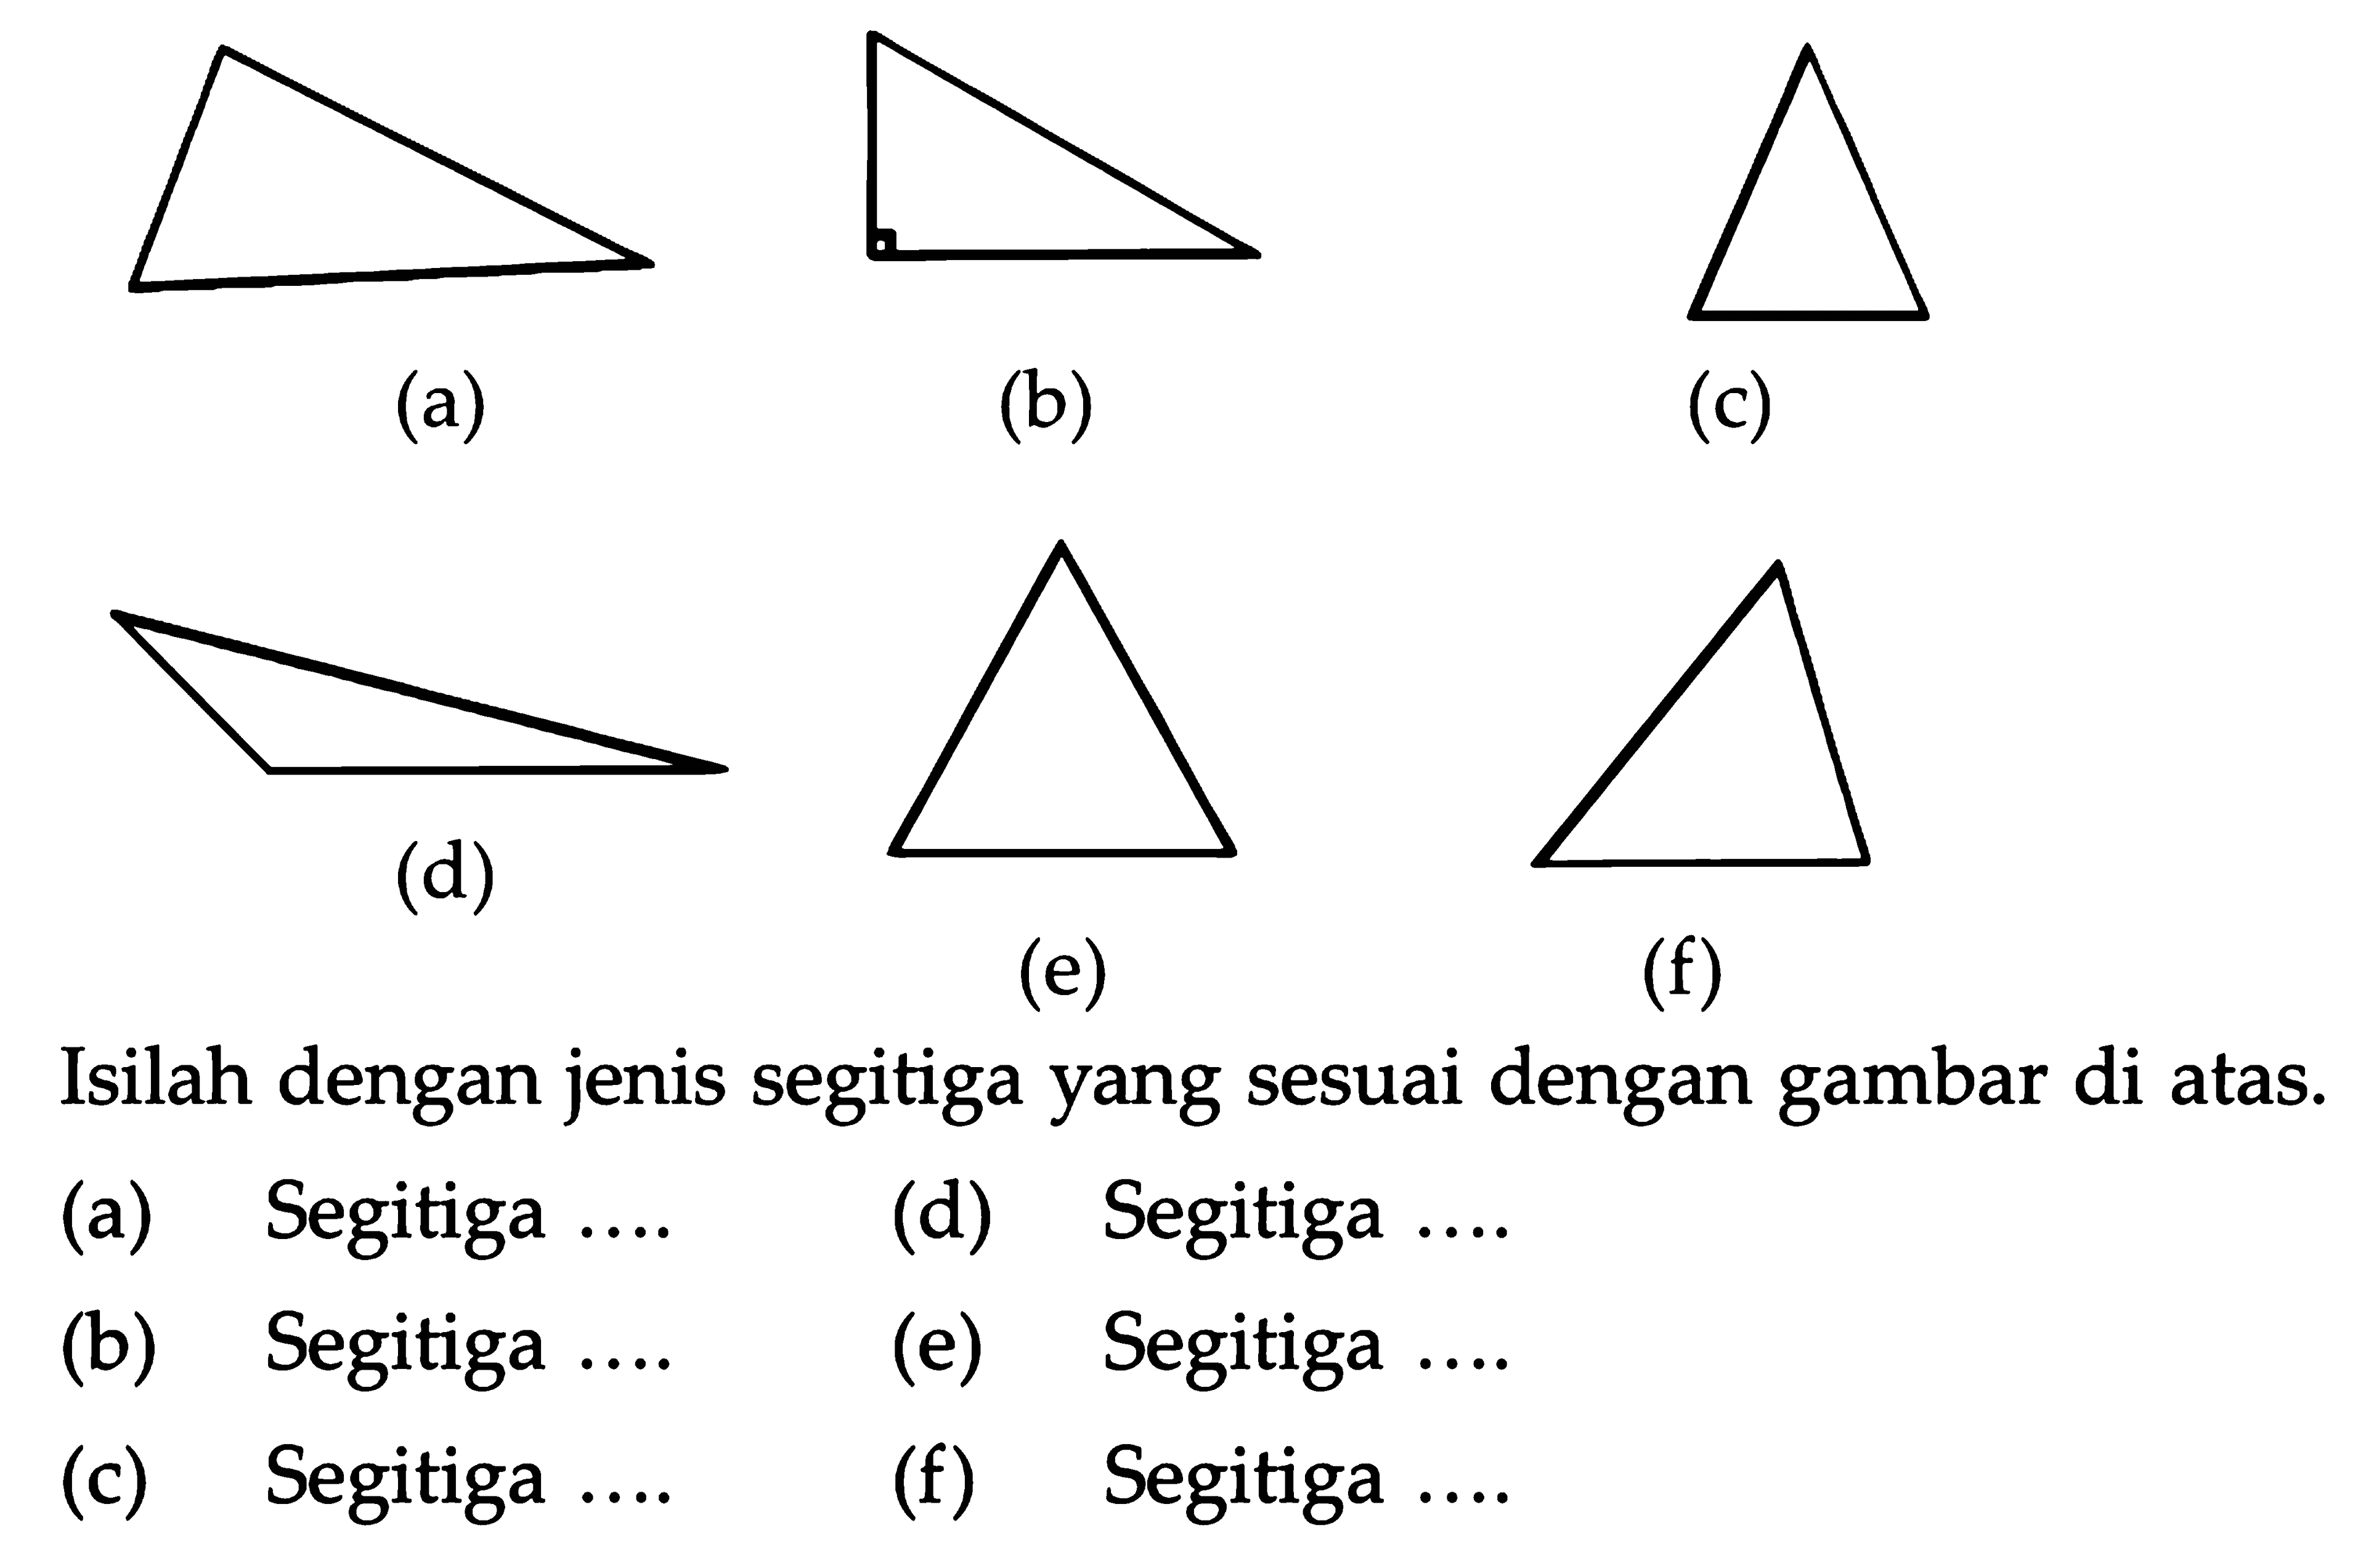  (a) 
(b)
(c)
 (d) 
(e)
(f)
Isilah dengan jenis segitiga yang sesuai dengan gambar di atas.
(a) Segitiga ....
(d) Segitiga ....
(b) Segitiga
(e) Segitiga ....
(c) Segitiga ....
(f) Segitiga ....